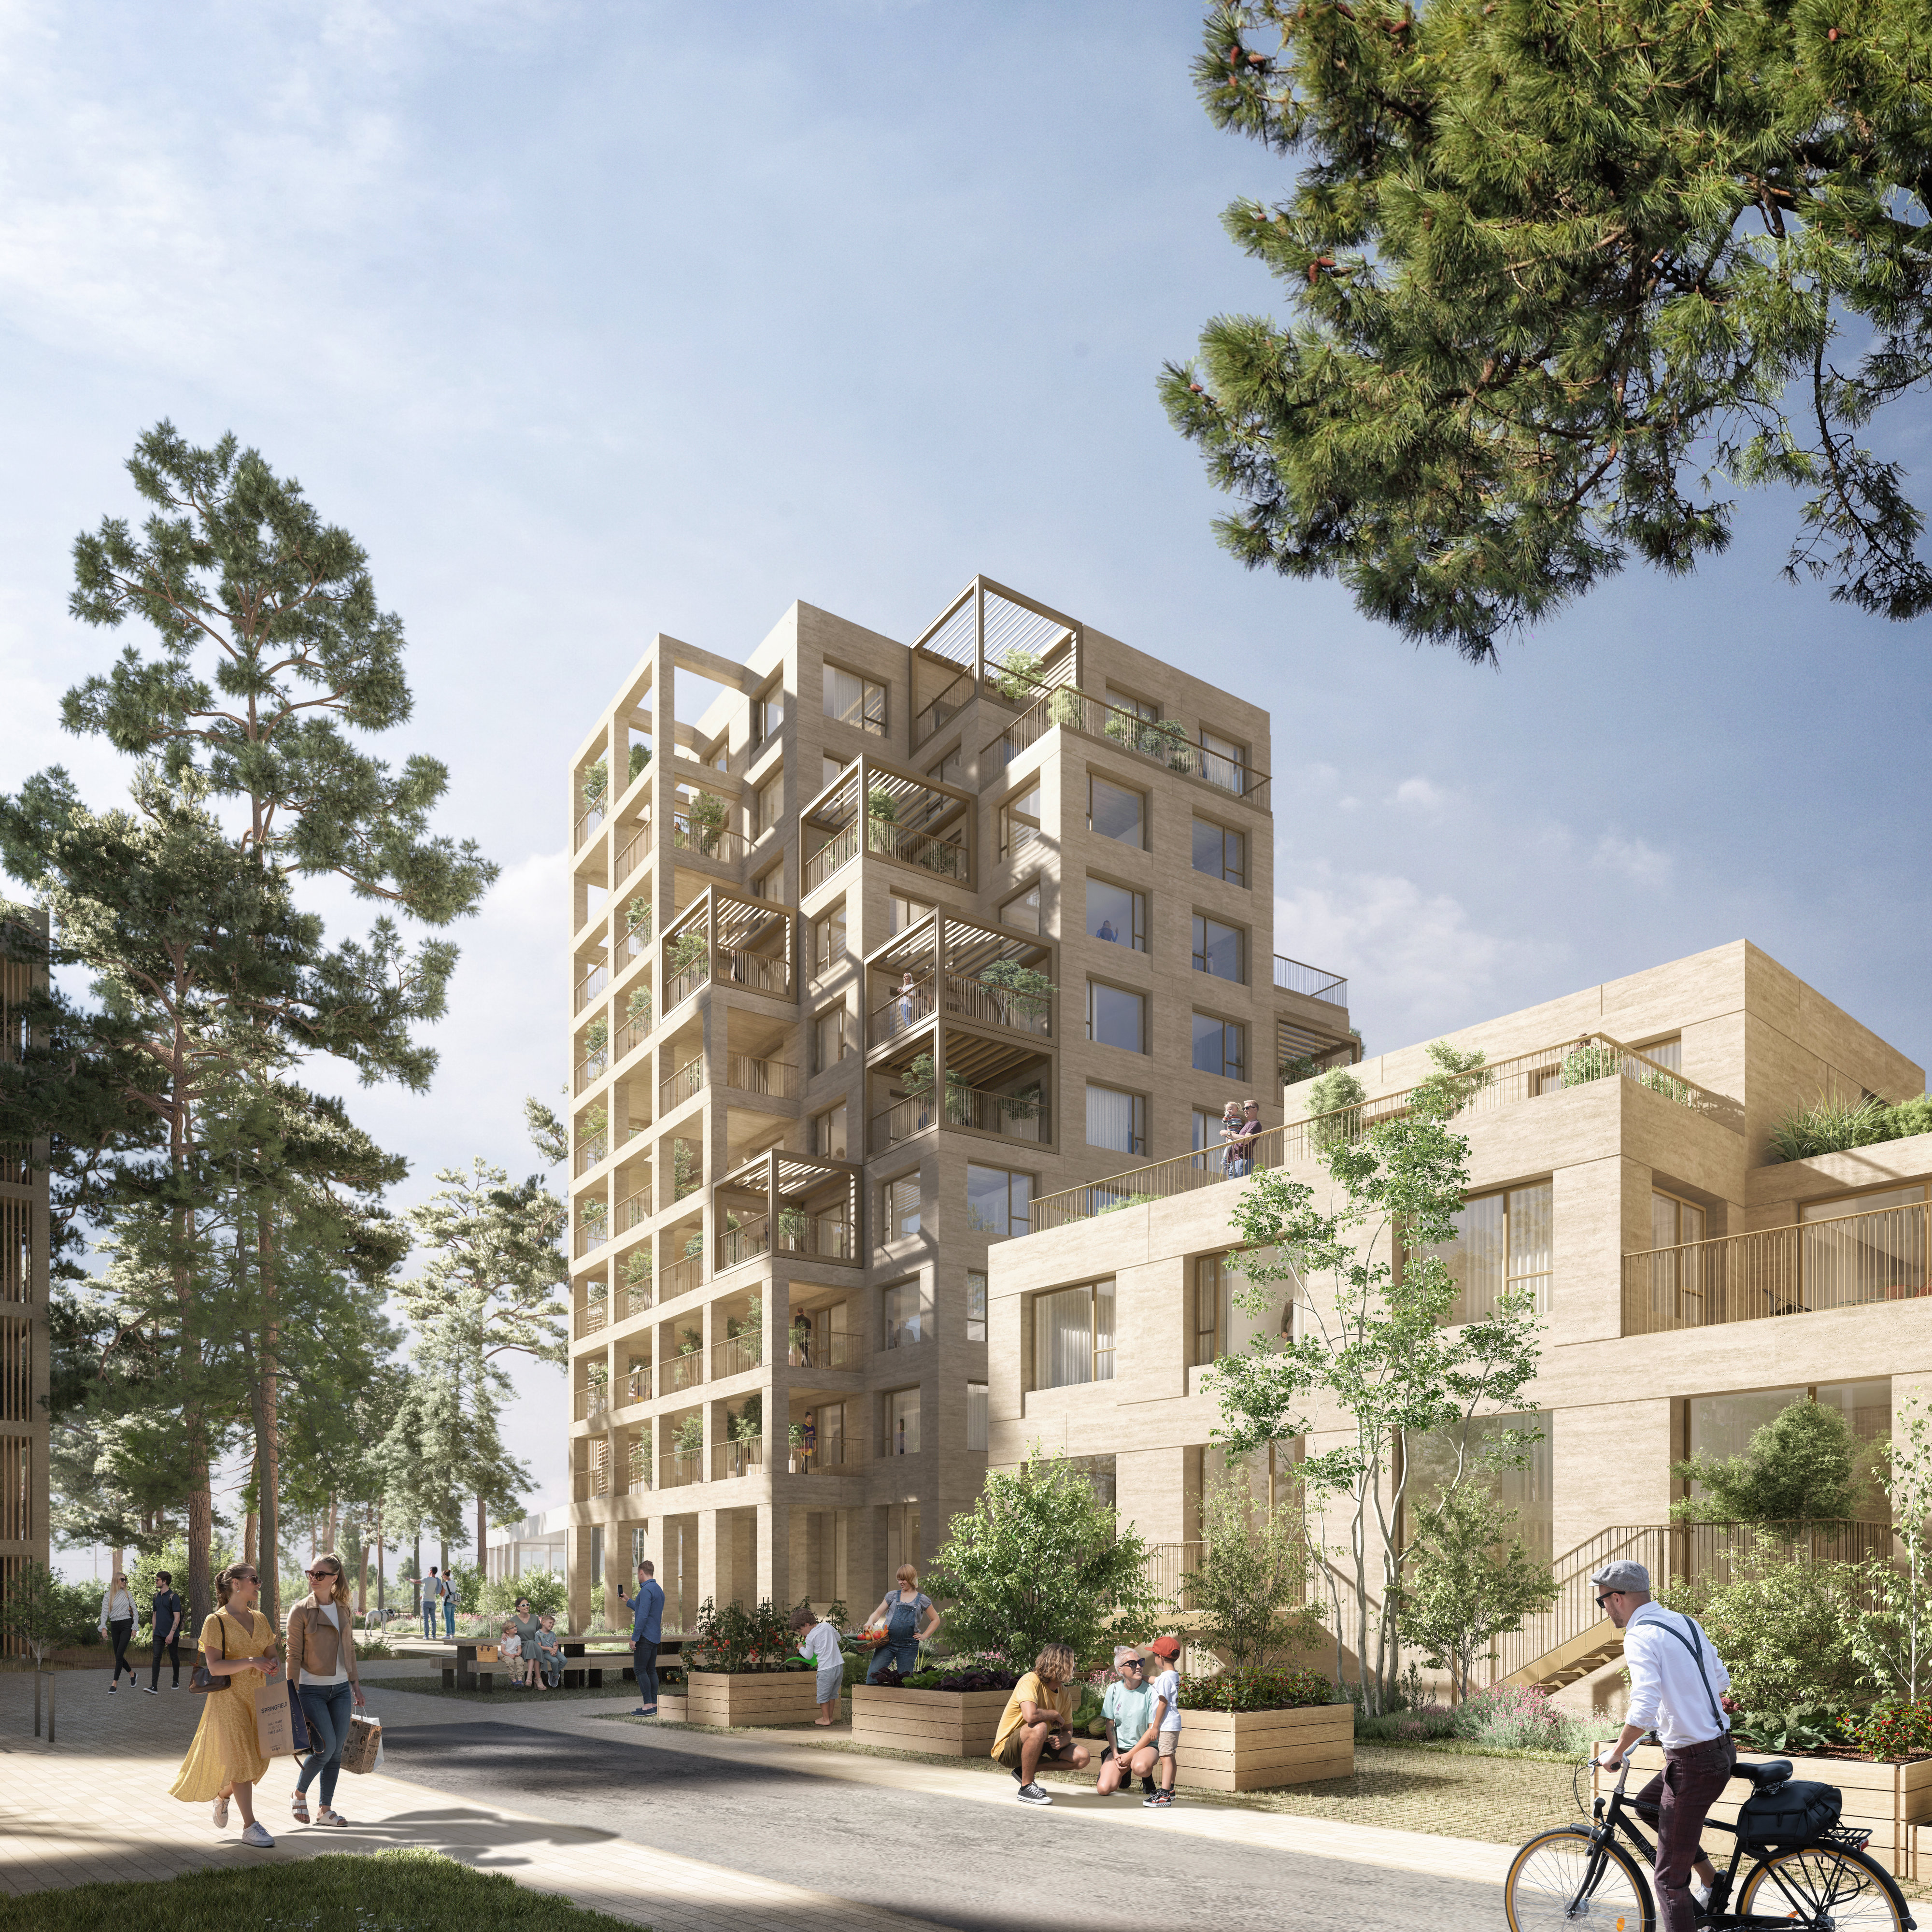 Programme immobilier neuf NOÈME (appartements neufs 4 à 5 pièces) (4 à 5 pièces, 79 à 107 m²) Bordeaux